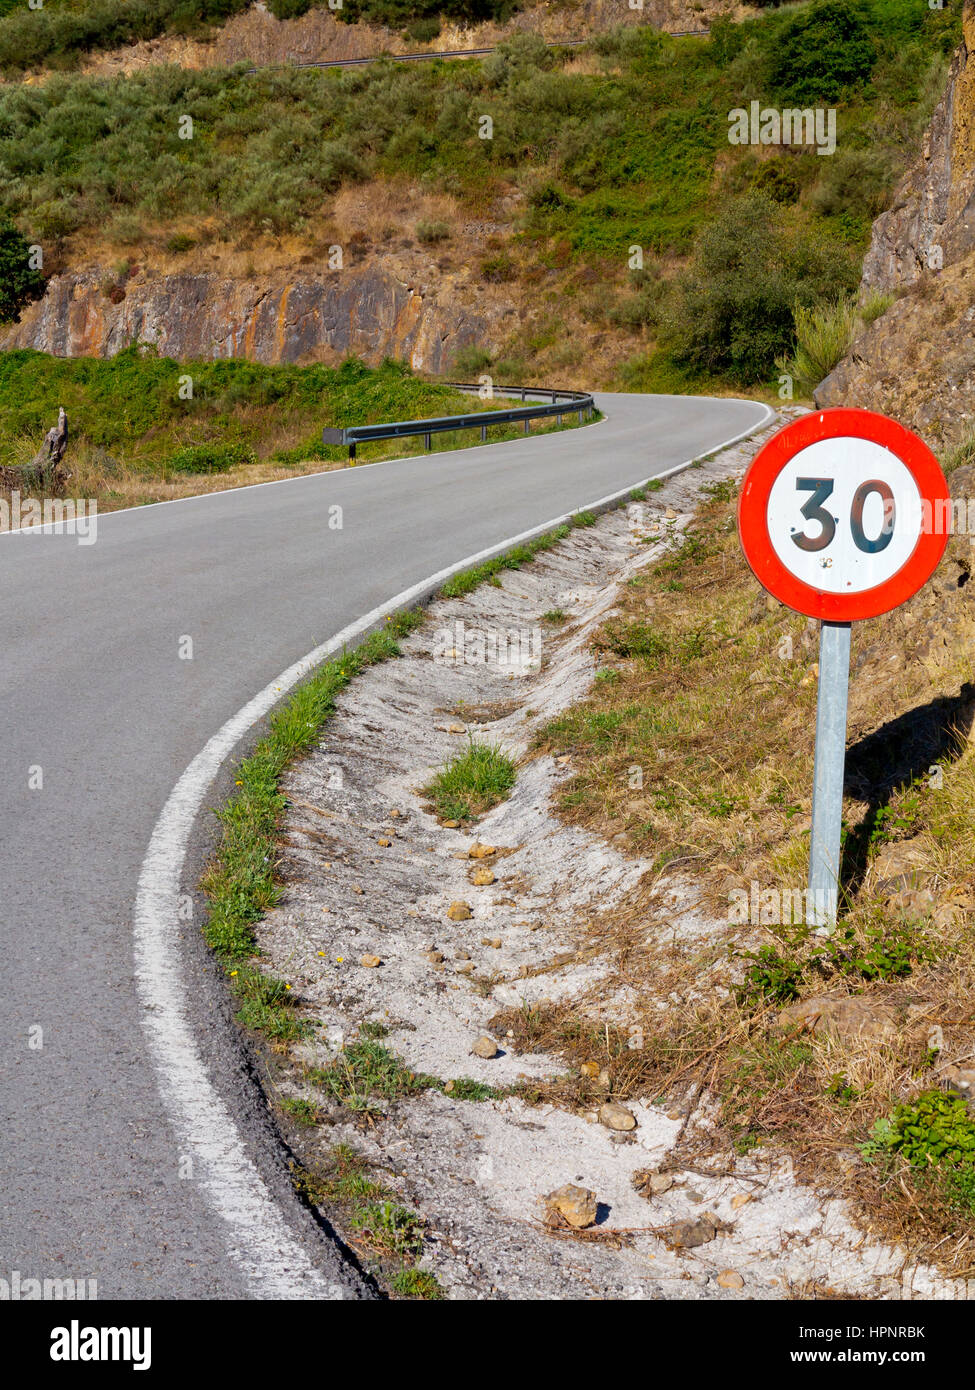 Mountain road and speed limit sign at Mirador de Penallana, Vega de Liebana, Picos de Europa National Park, Cantabria, northern Spain Stock Photo